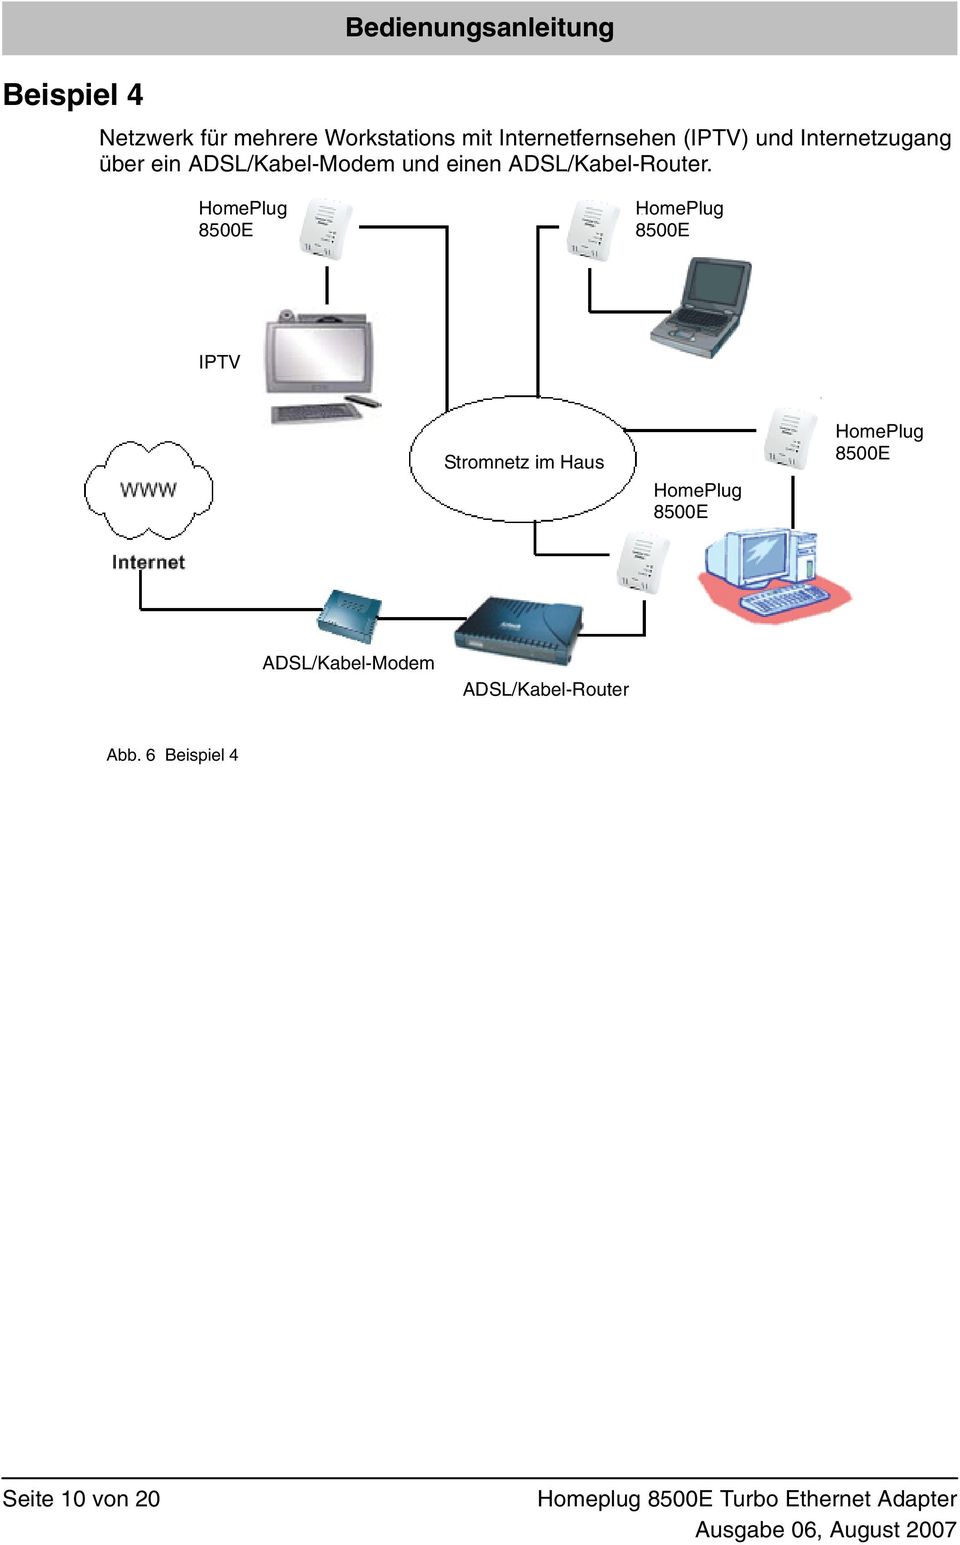 ADSL/Kabel-Modem und einen ADSL/Kabel-Router.